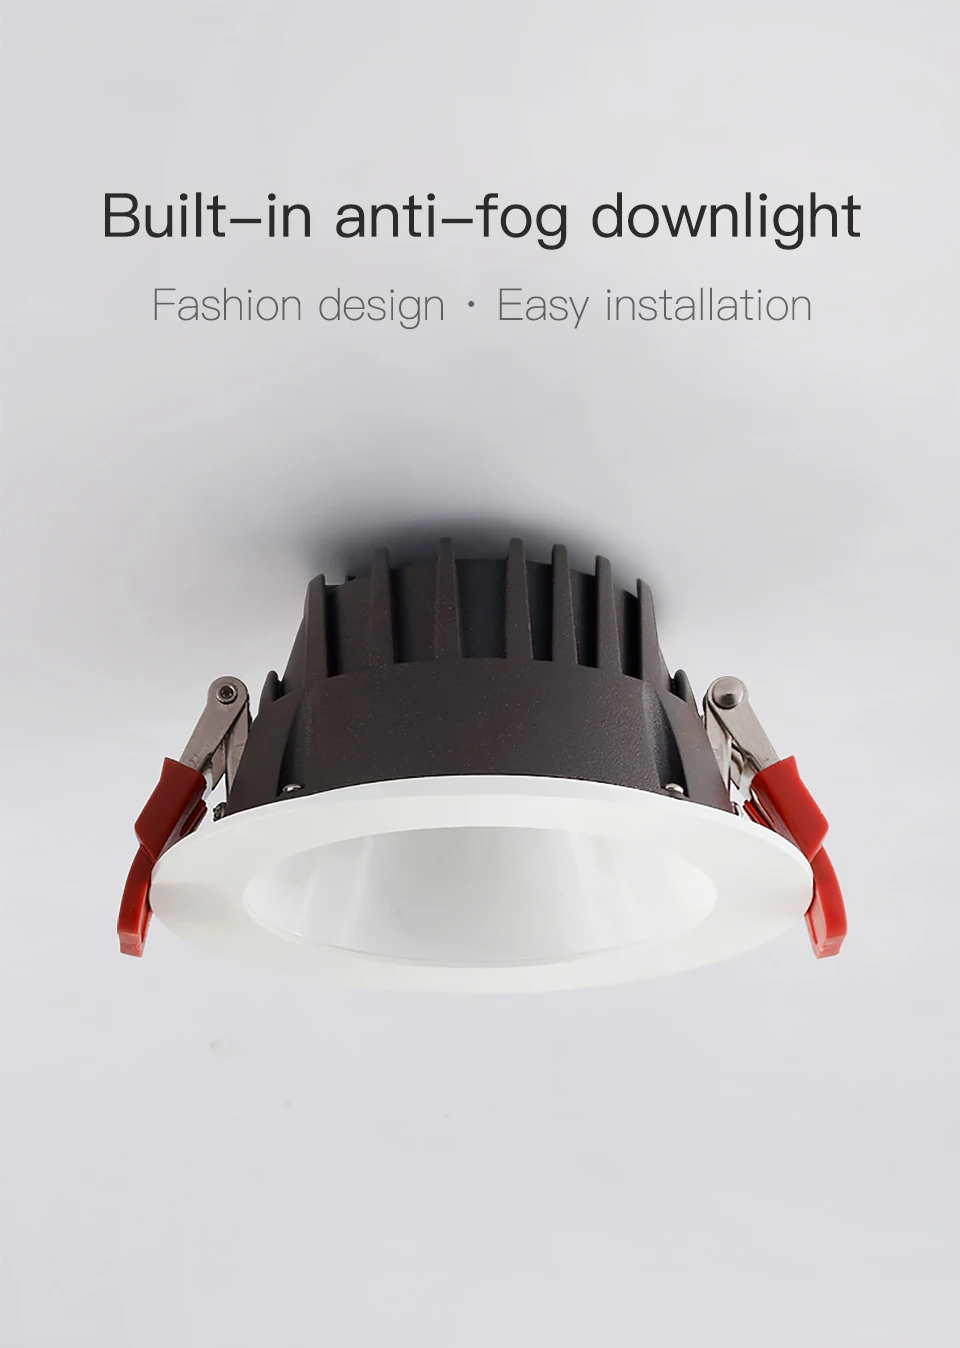 SCON AC110-240V 5 Вт Светодиодный Antifogging светильник Ra> 93 CREE встроенный, потолочный лампы 4000 k офис 90 градусов натуральный крытый свет 400lm